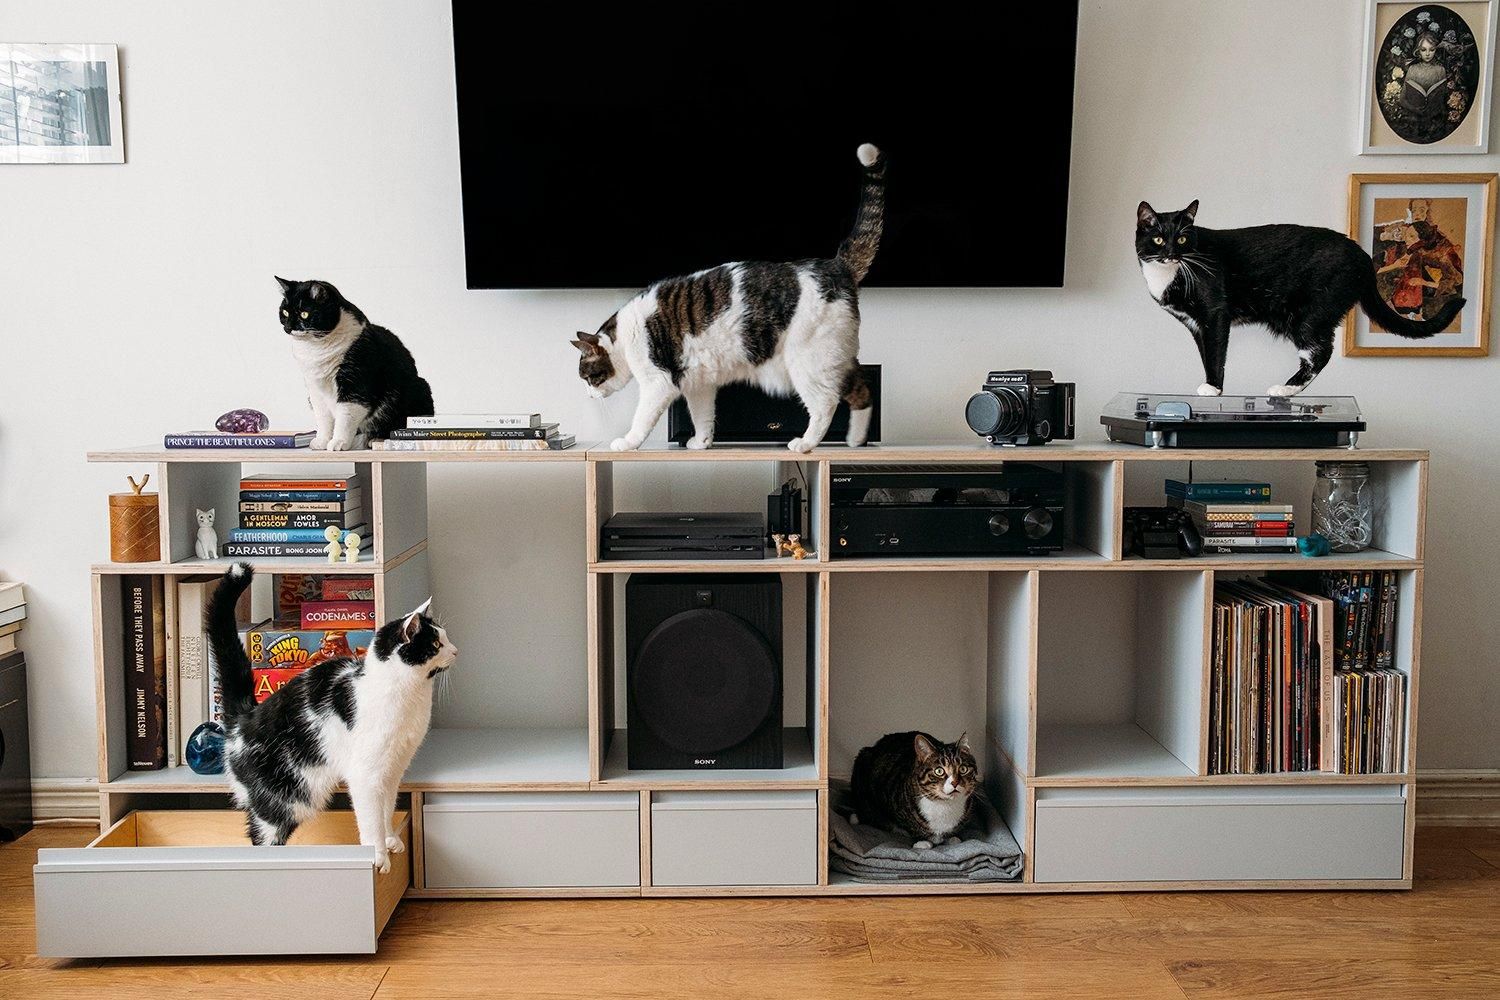 Періс Зарцілла та 5 котів: як живе режисер і його зграя